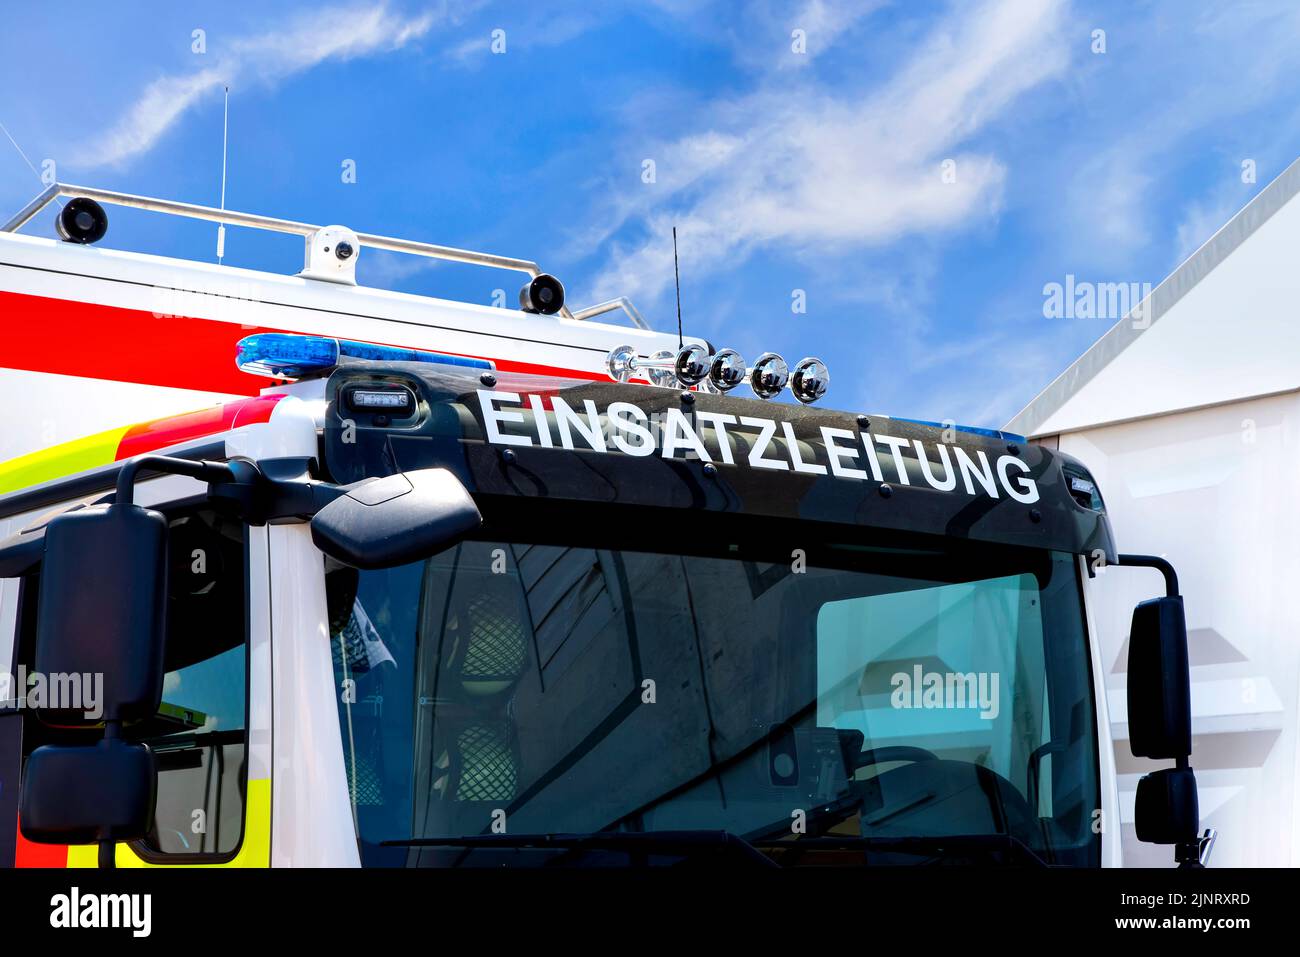 Einsatzteam-Fahrzeug der deutschen Feuerwehr. Lettering Einsatzleitung (engl. Incident Response Team) Stockfoto